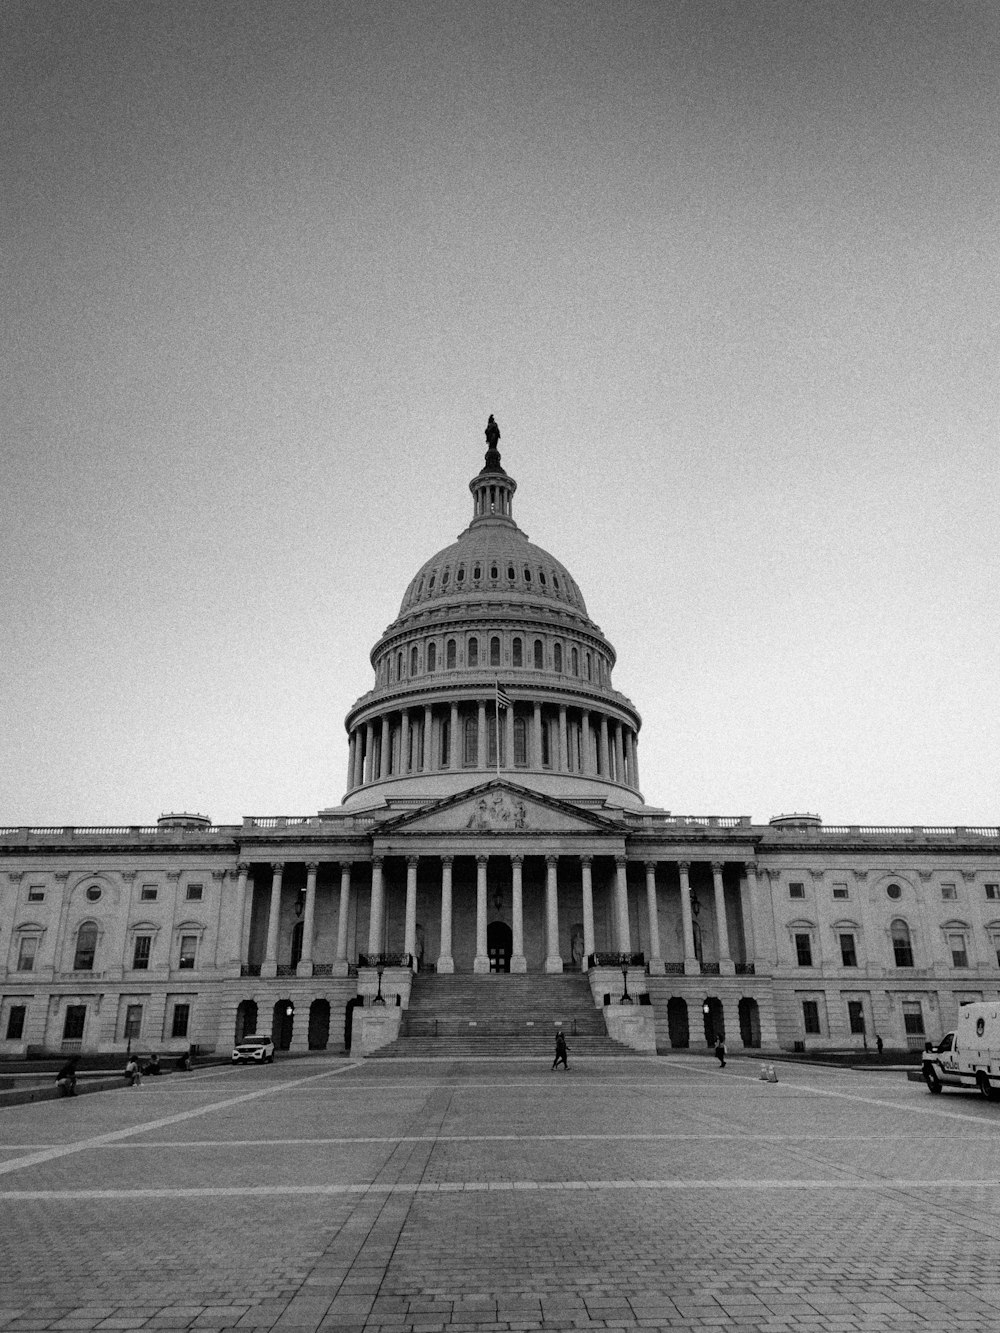 Uma foto em preto e branco do Edifício do Capitólio dos EUA